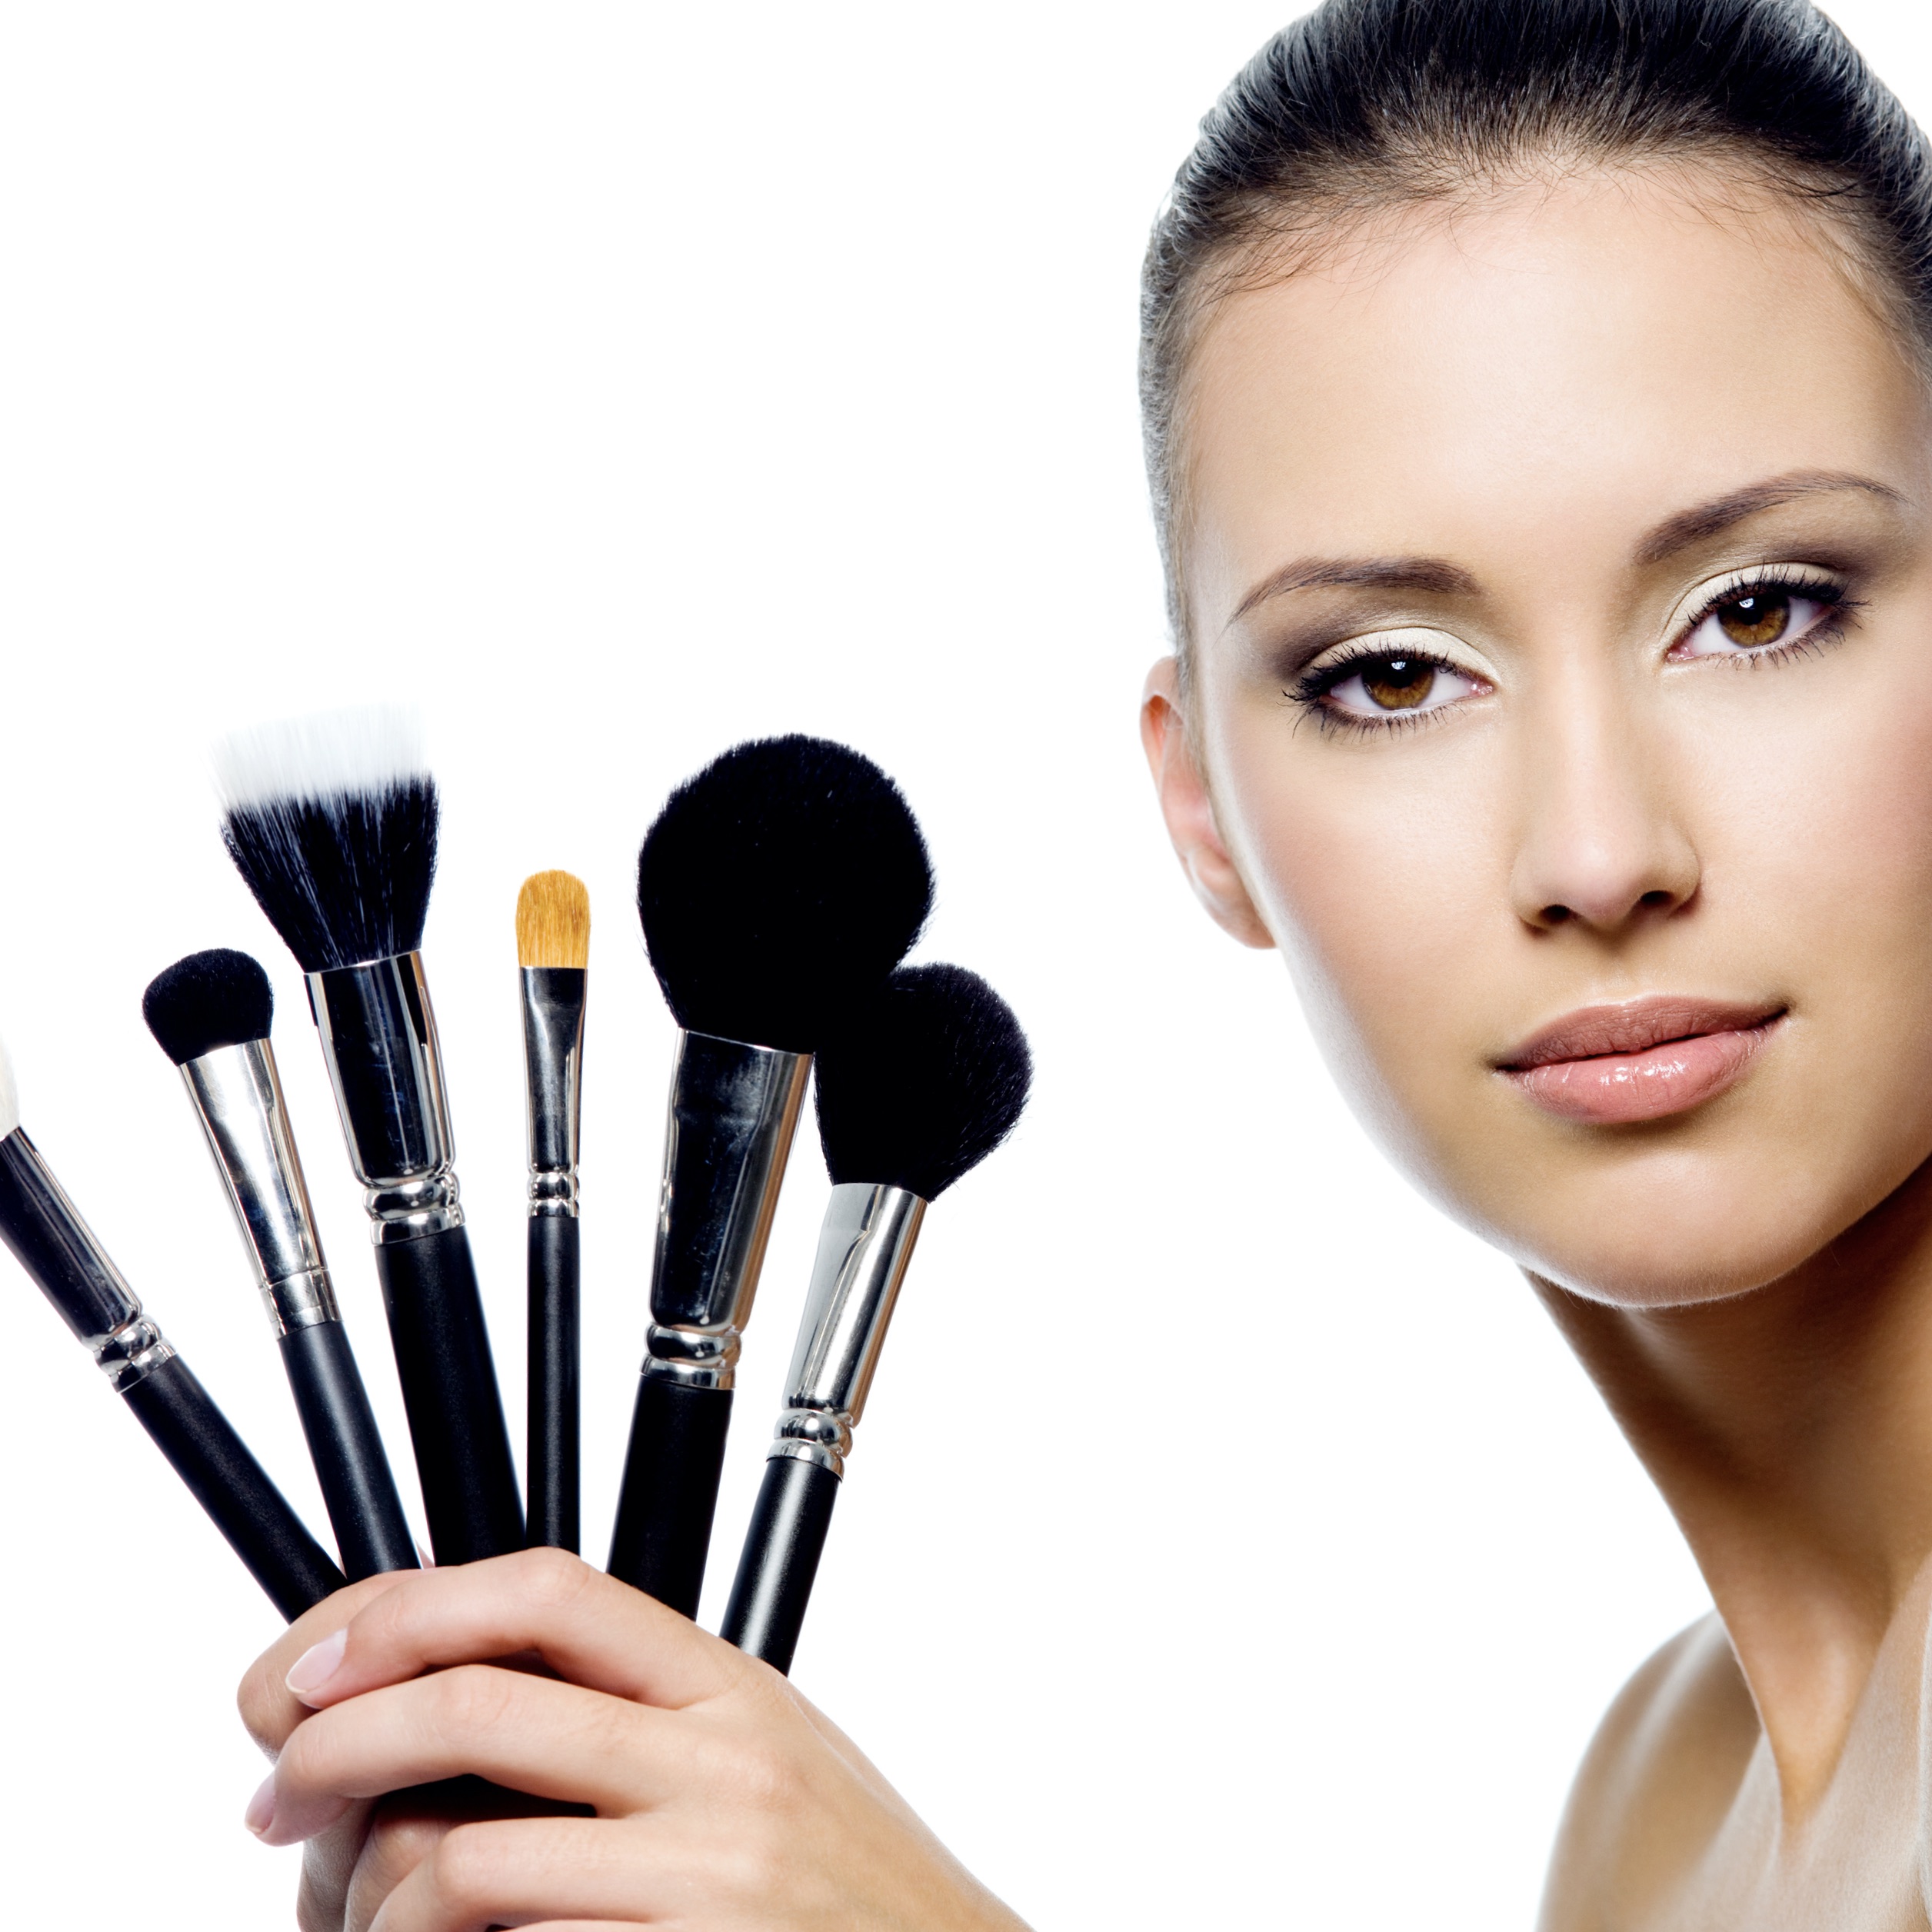 Use a disposable makeup applicator